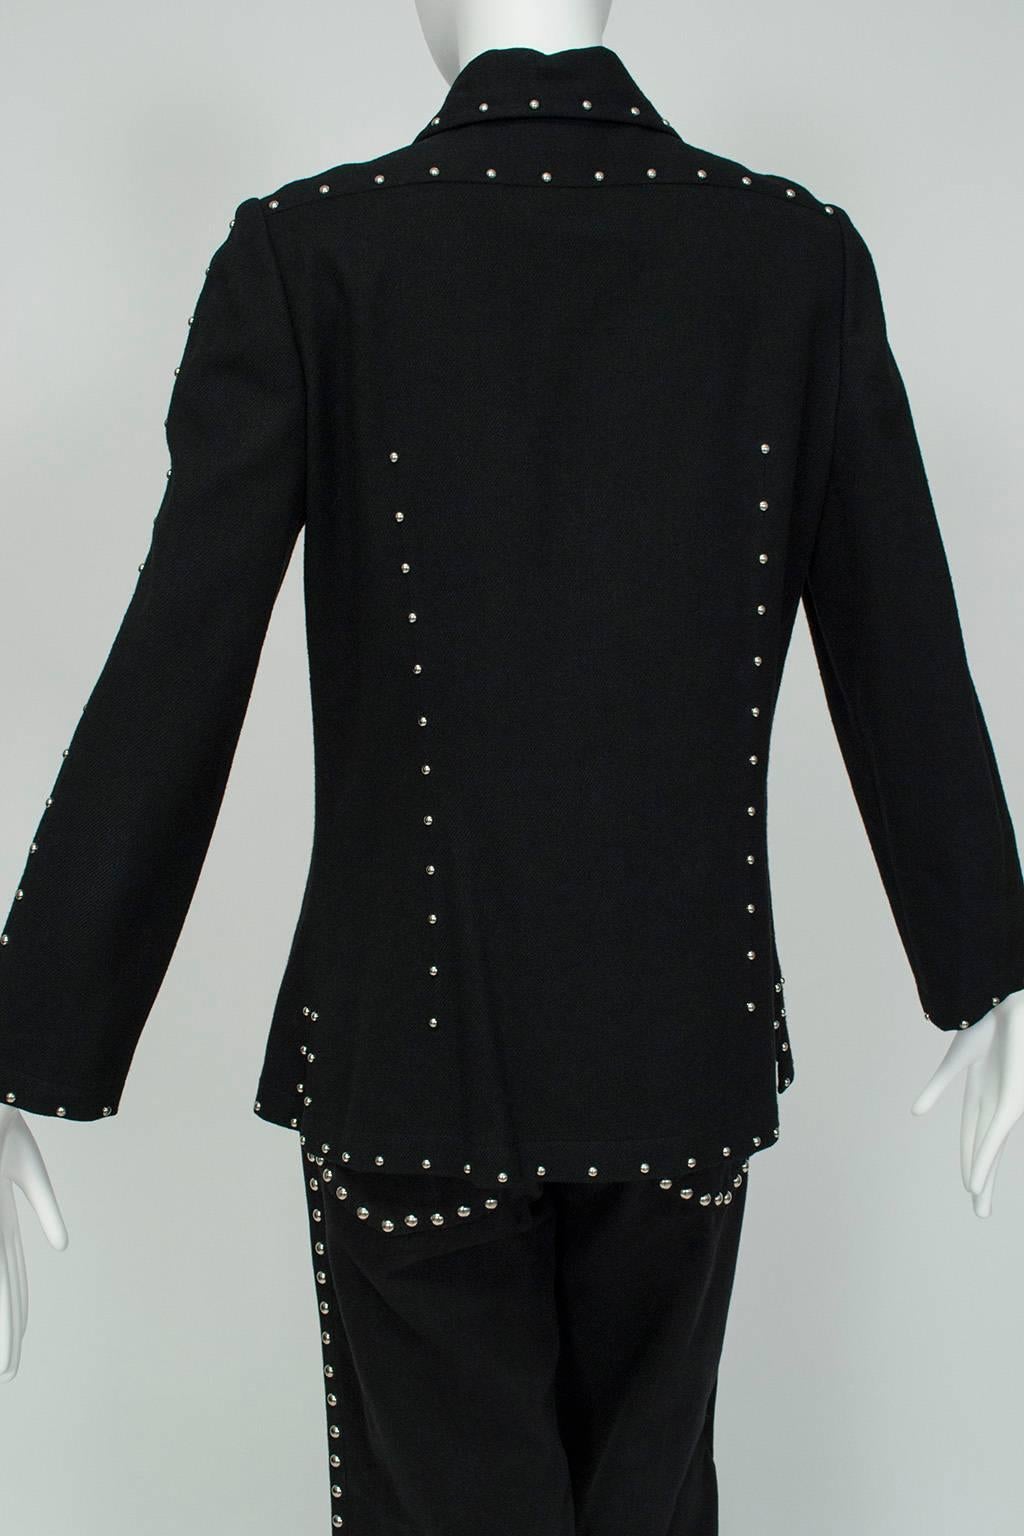 Ensemble Graceland en laine noire et argentée à clous cloutés en forme de cloche d'élevage, taille S-M, années 1960 Pour femmes en vente